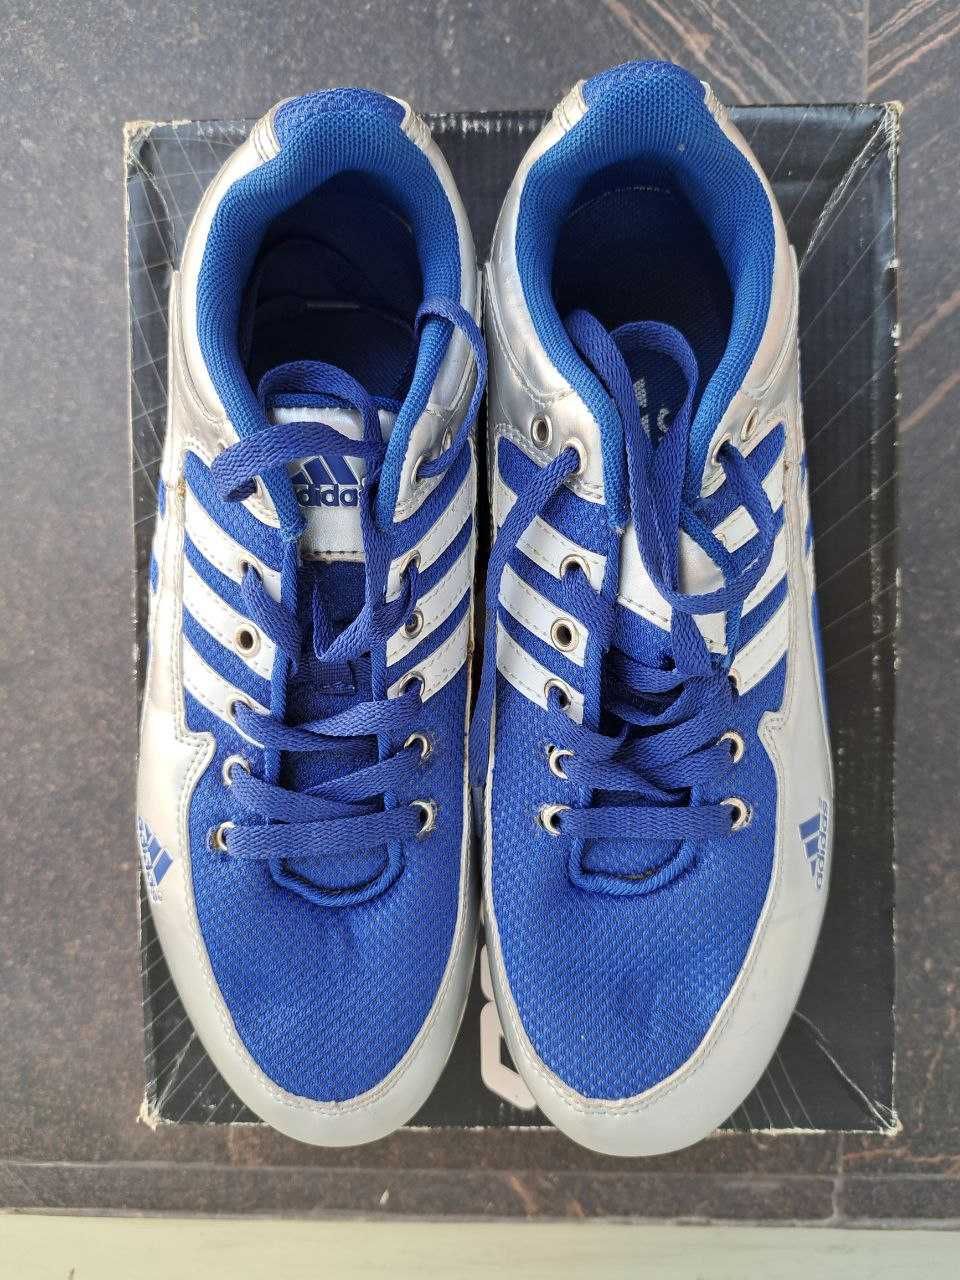 Шипованные кроссовки для спринта Adidas, оригинал, размер 42 EU